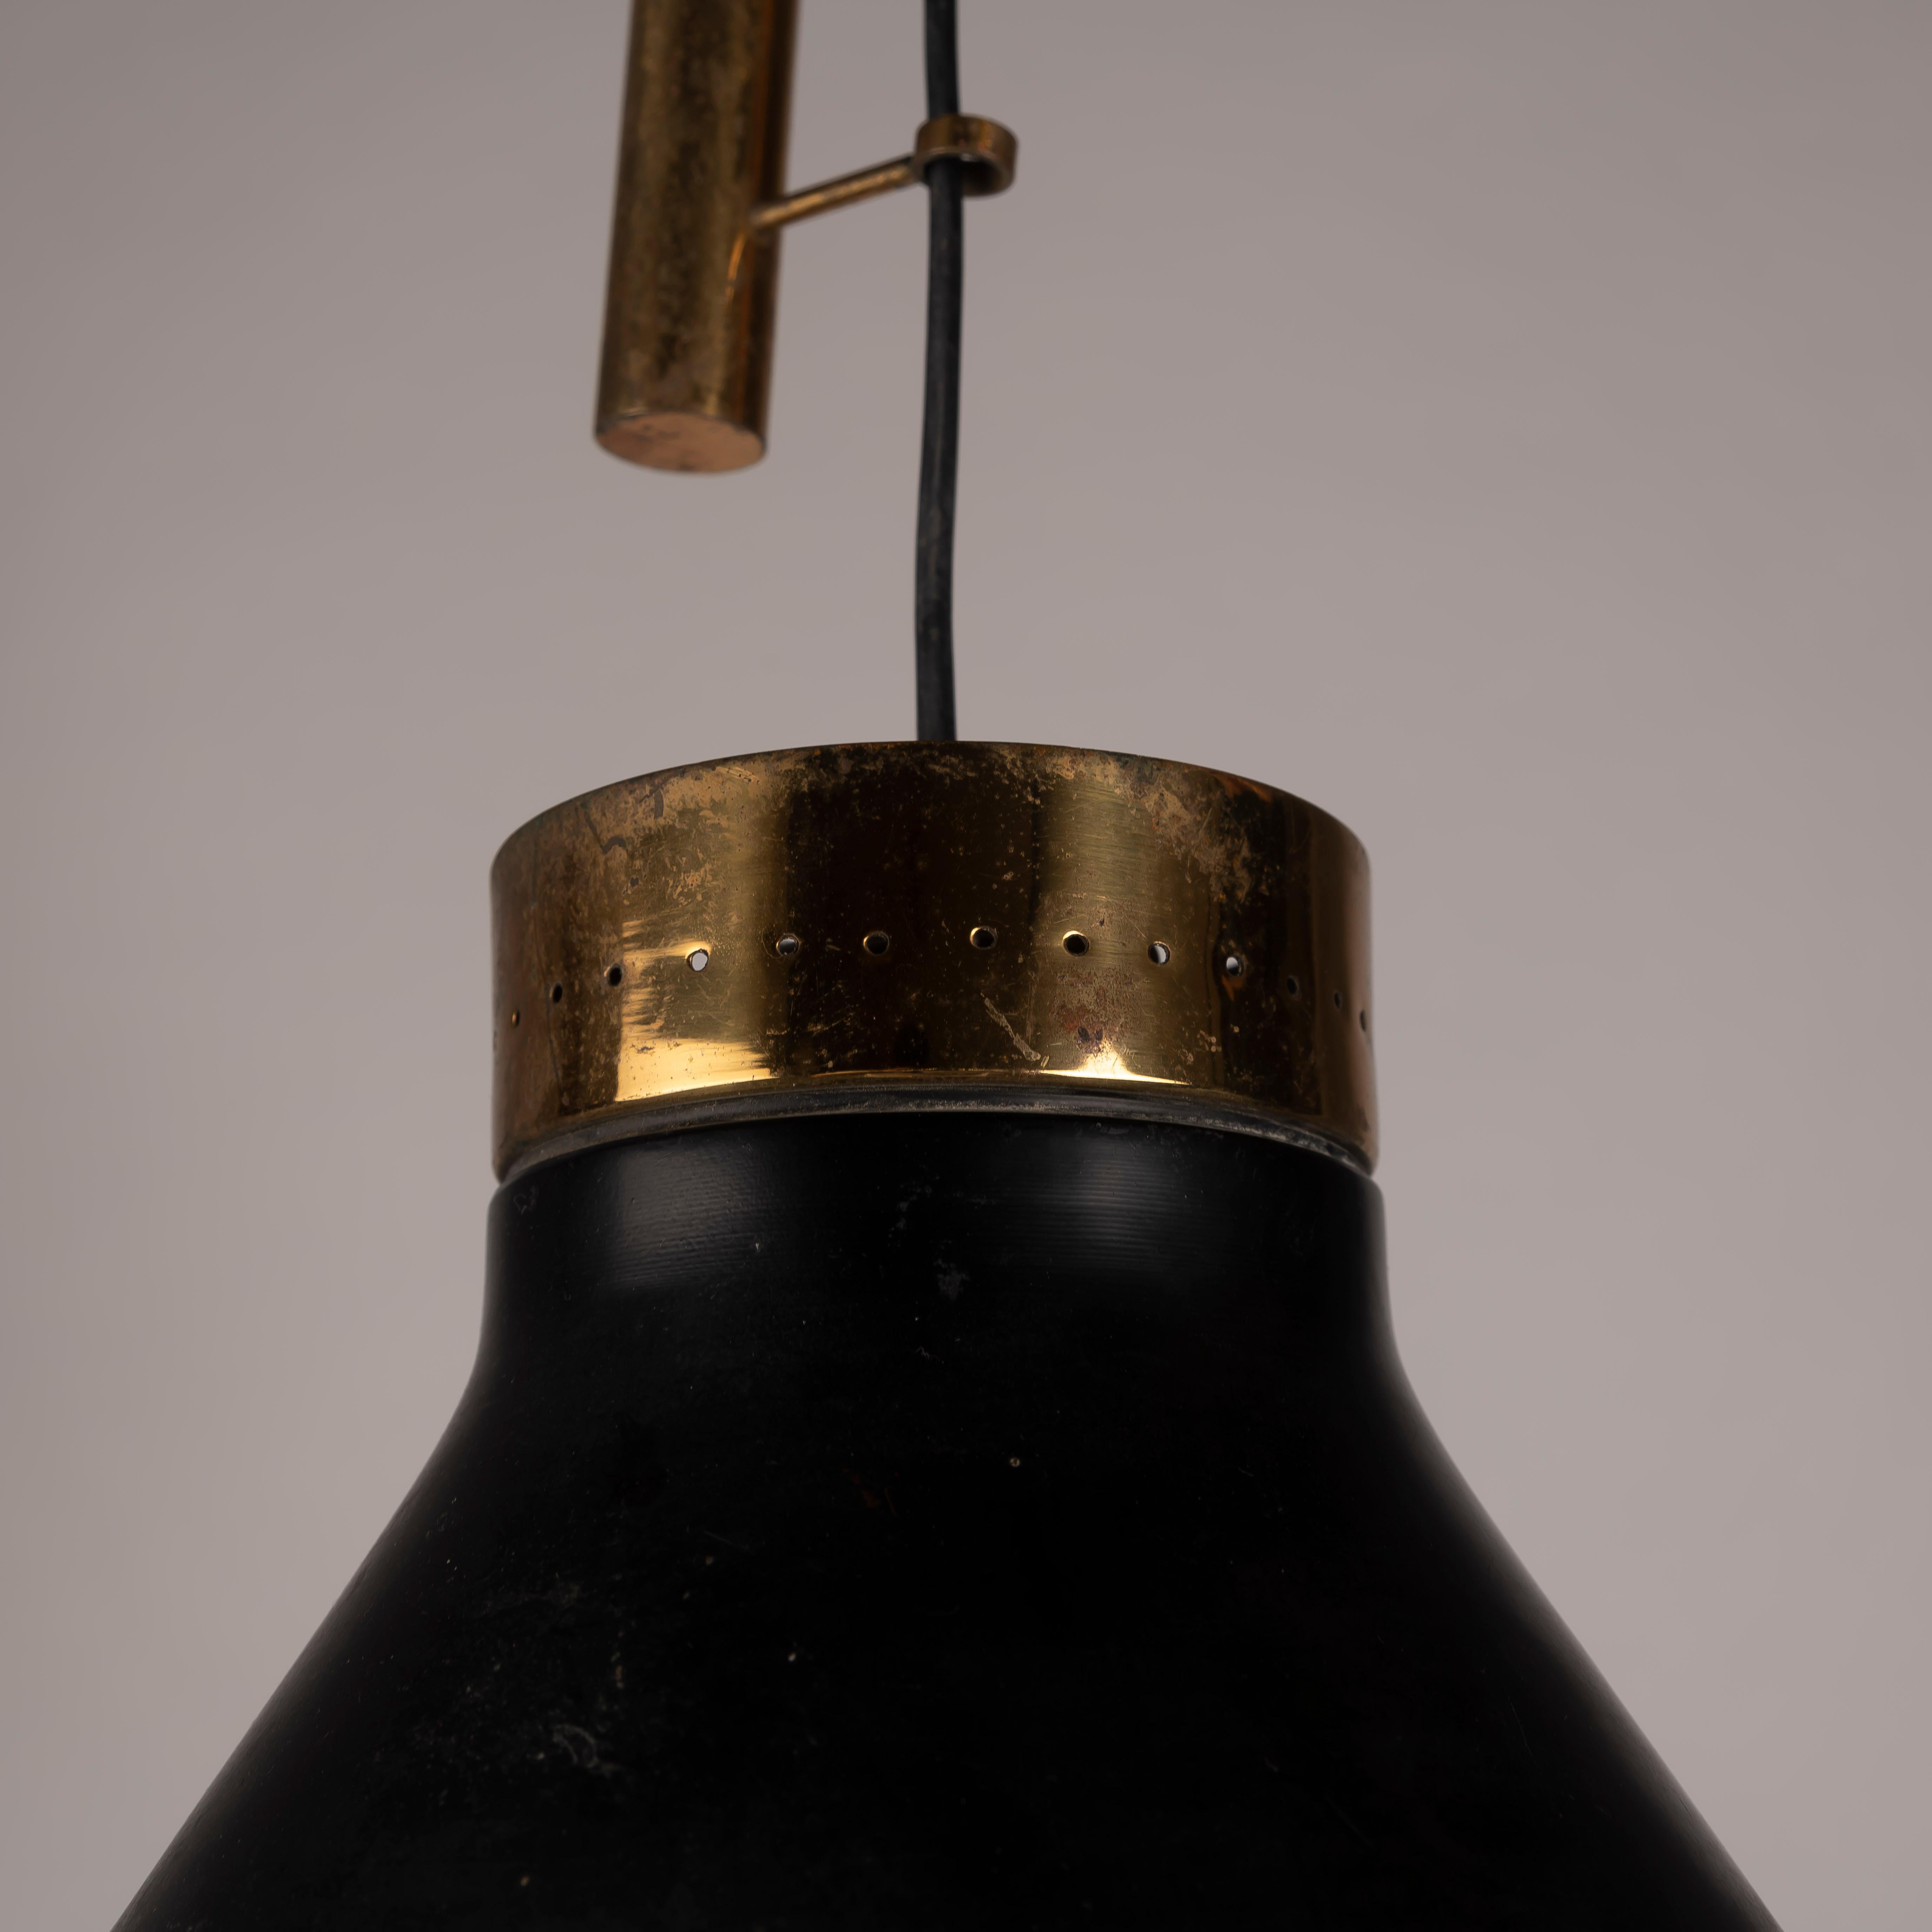 Die Oscar Torlasco for Lumi Milano Pendelleuchte mit Gegengewicht aus den 1950er Jahren ist mehr als nur eine Leuchte; sie ist ein zeitloses Stück Designgeschichte, das Form und Funktion nahtlos miteinander verbindet. Diese Lampe aus der Mitte des